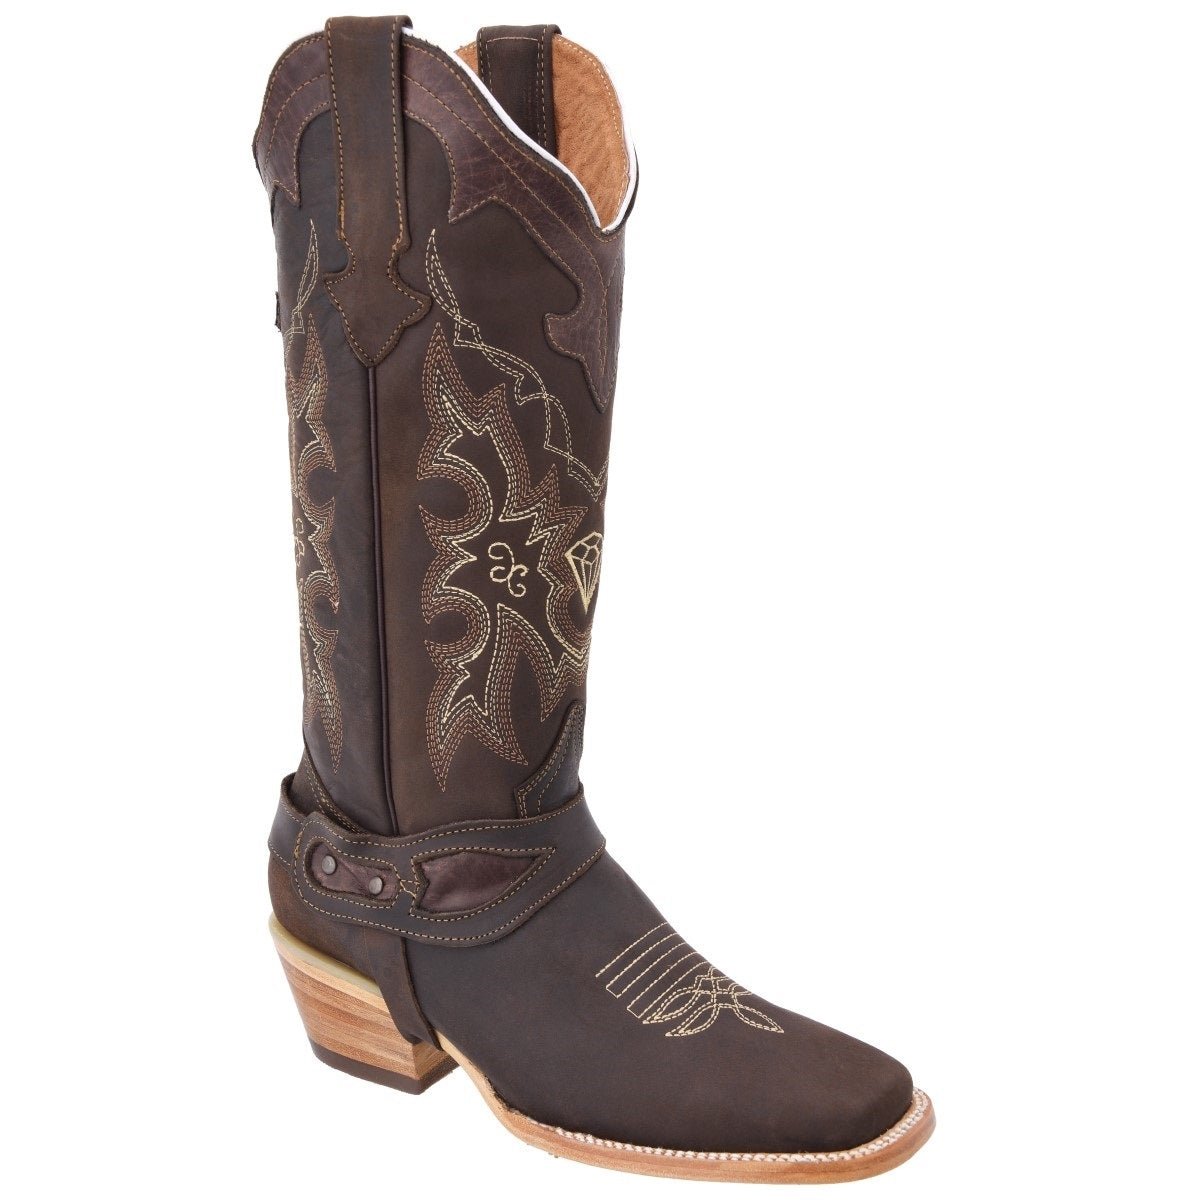 Botas Vaqueras TM-WD0535 - Western Boots